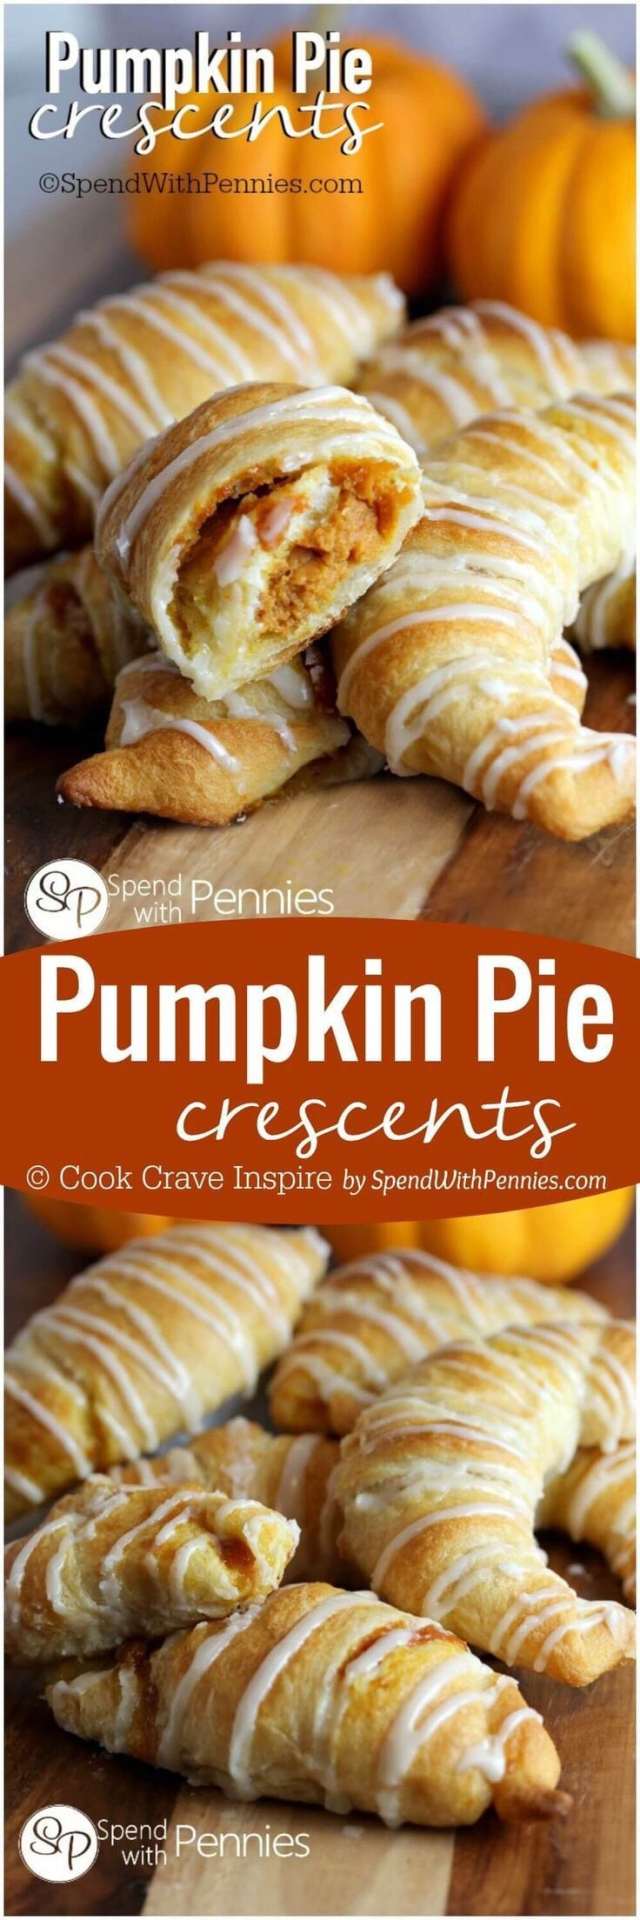 Pumpkin Spice Recipes: Pumpkin Pie Crescents